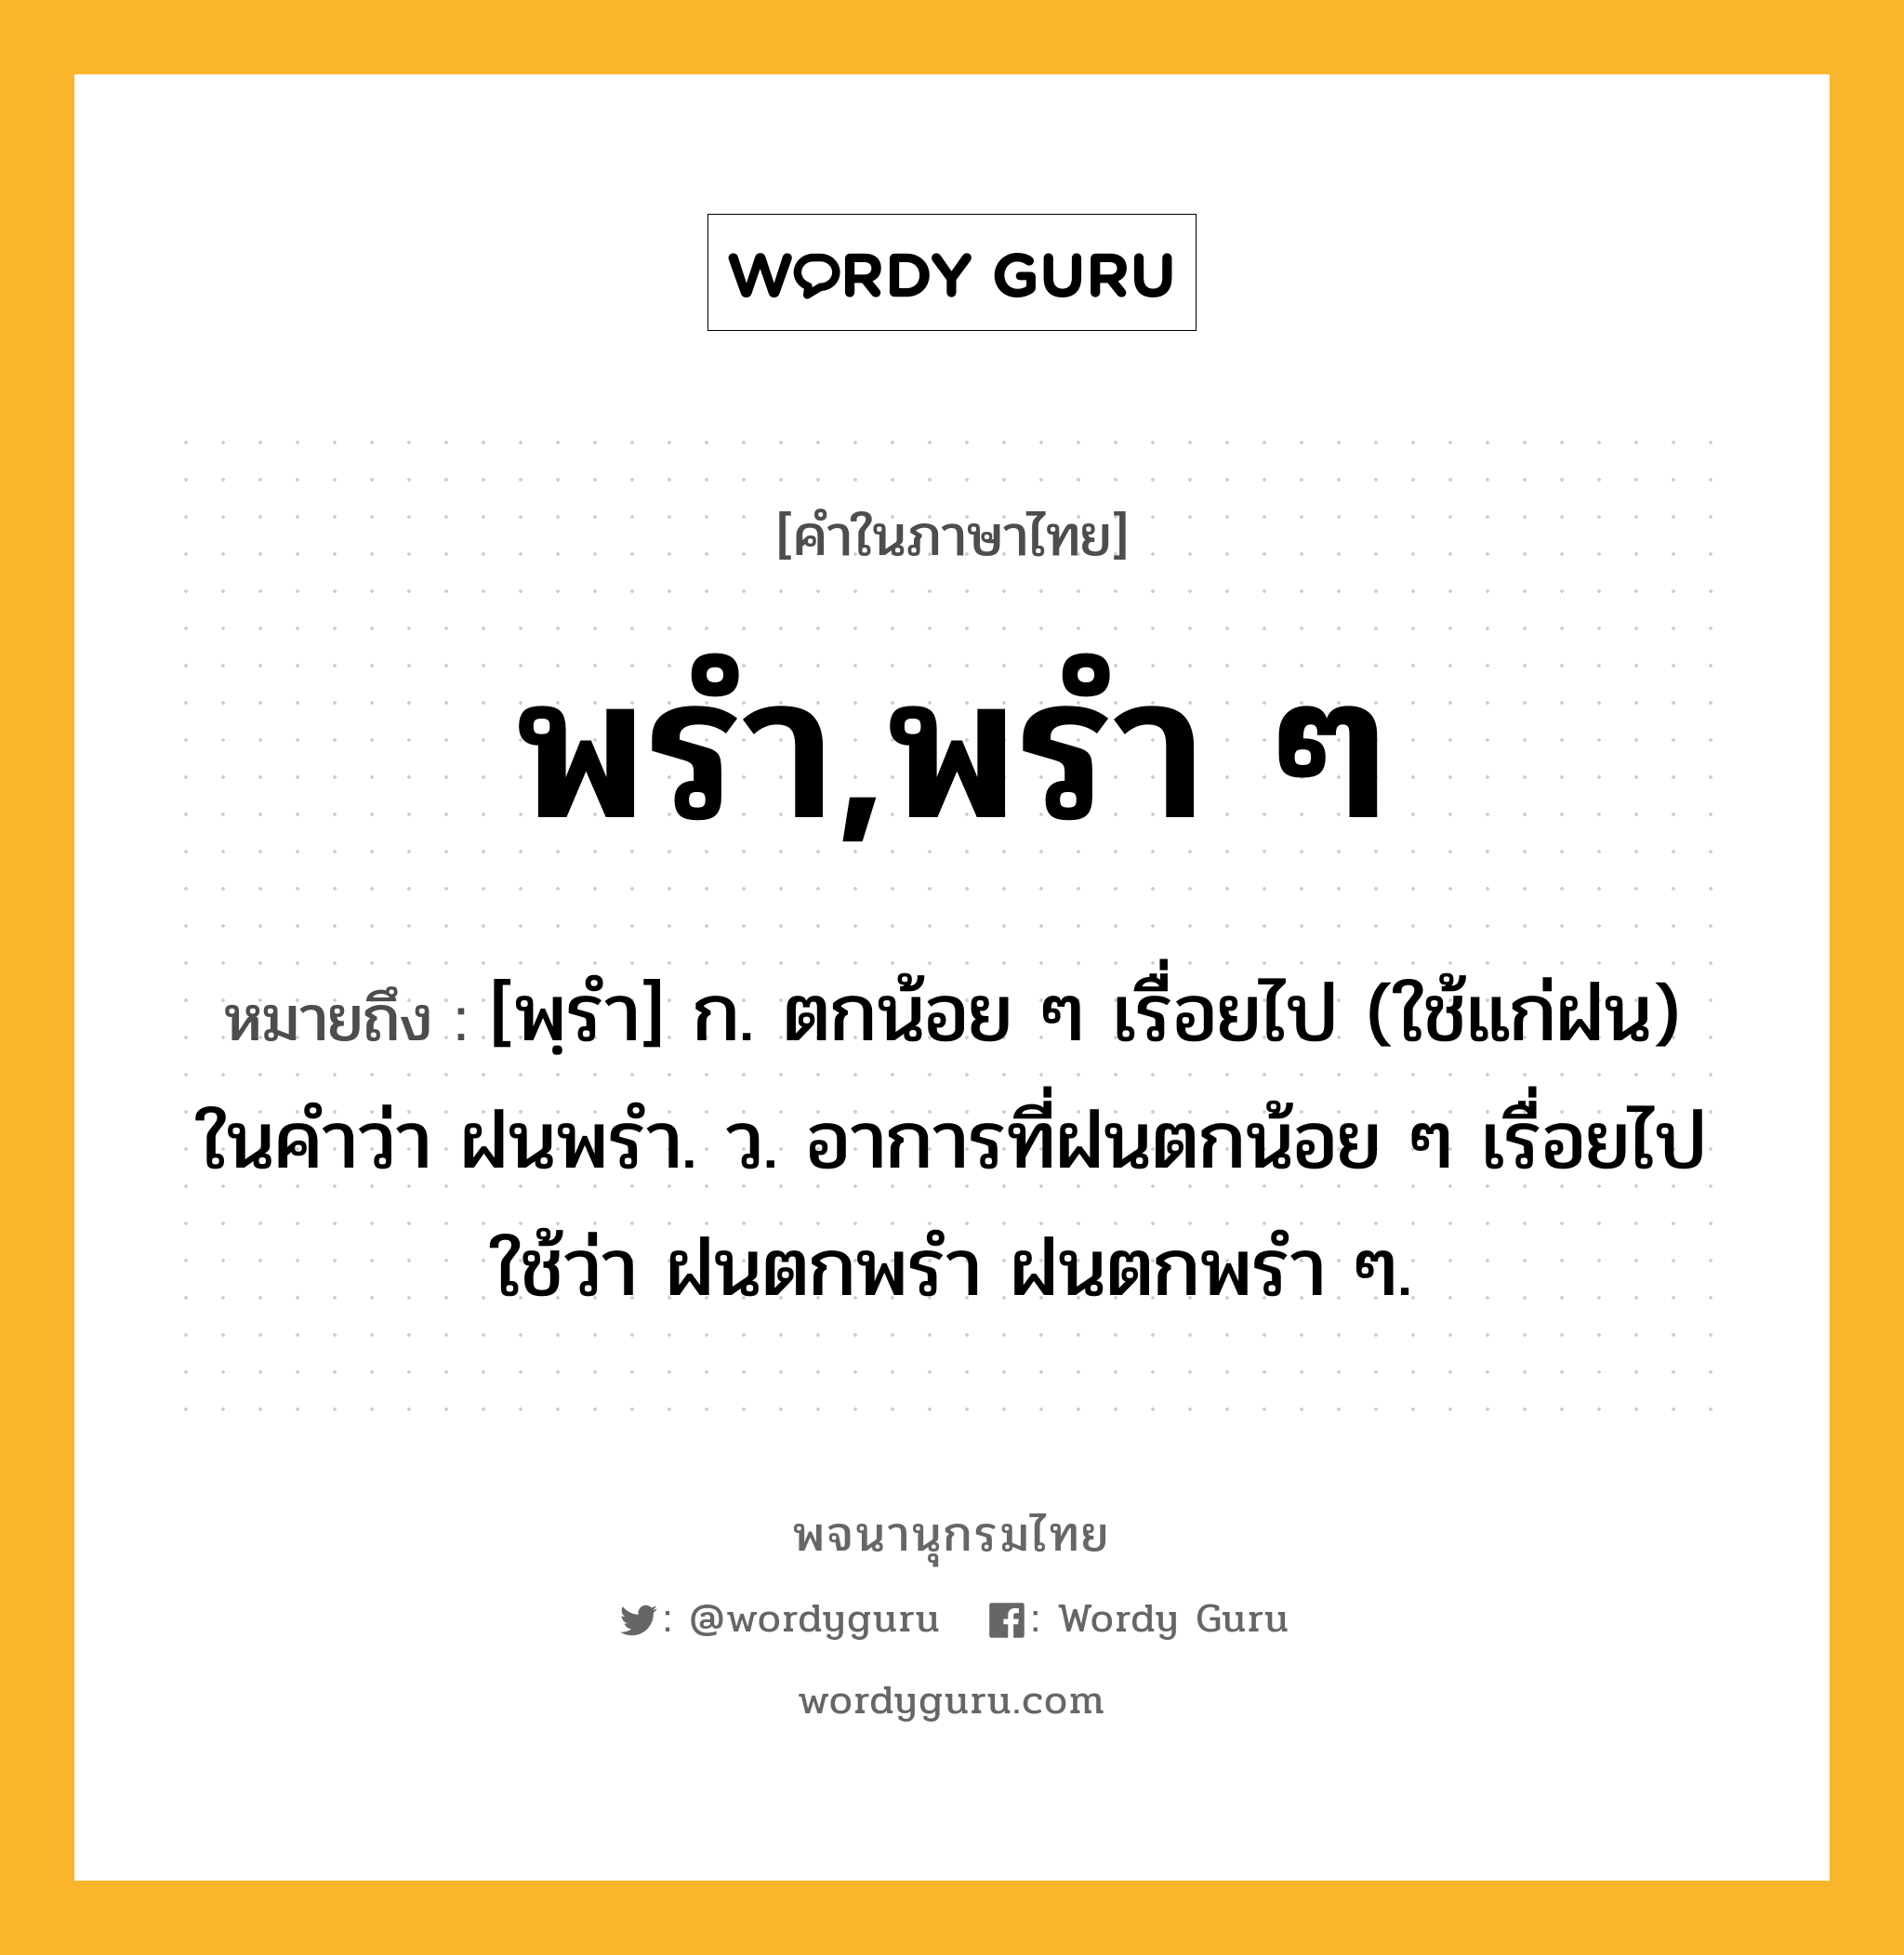 พรำ,พรำ ๆ ความหมาย หมายถึงอะไร?, คำในภาษาไทย พรำ,พรำ ๆ หมายถึง [พฺรํา] ก. ตกน้อย ๆ เรื่อยไป (ใช้แก่ฝน) ในคําว่า ฝนพรำ. ว. อาการที่ฝนตกน้อย ๆ เรื่อยไป ใช้ว่า ฝนตกพรํา ฝนตกพรํา ๆ.